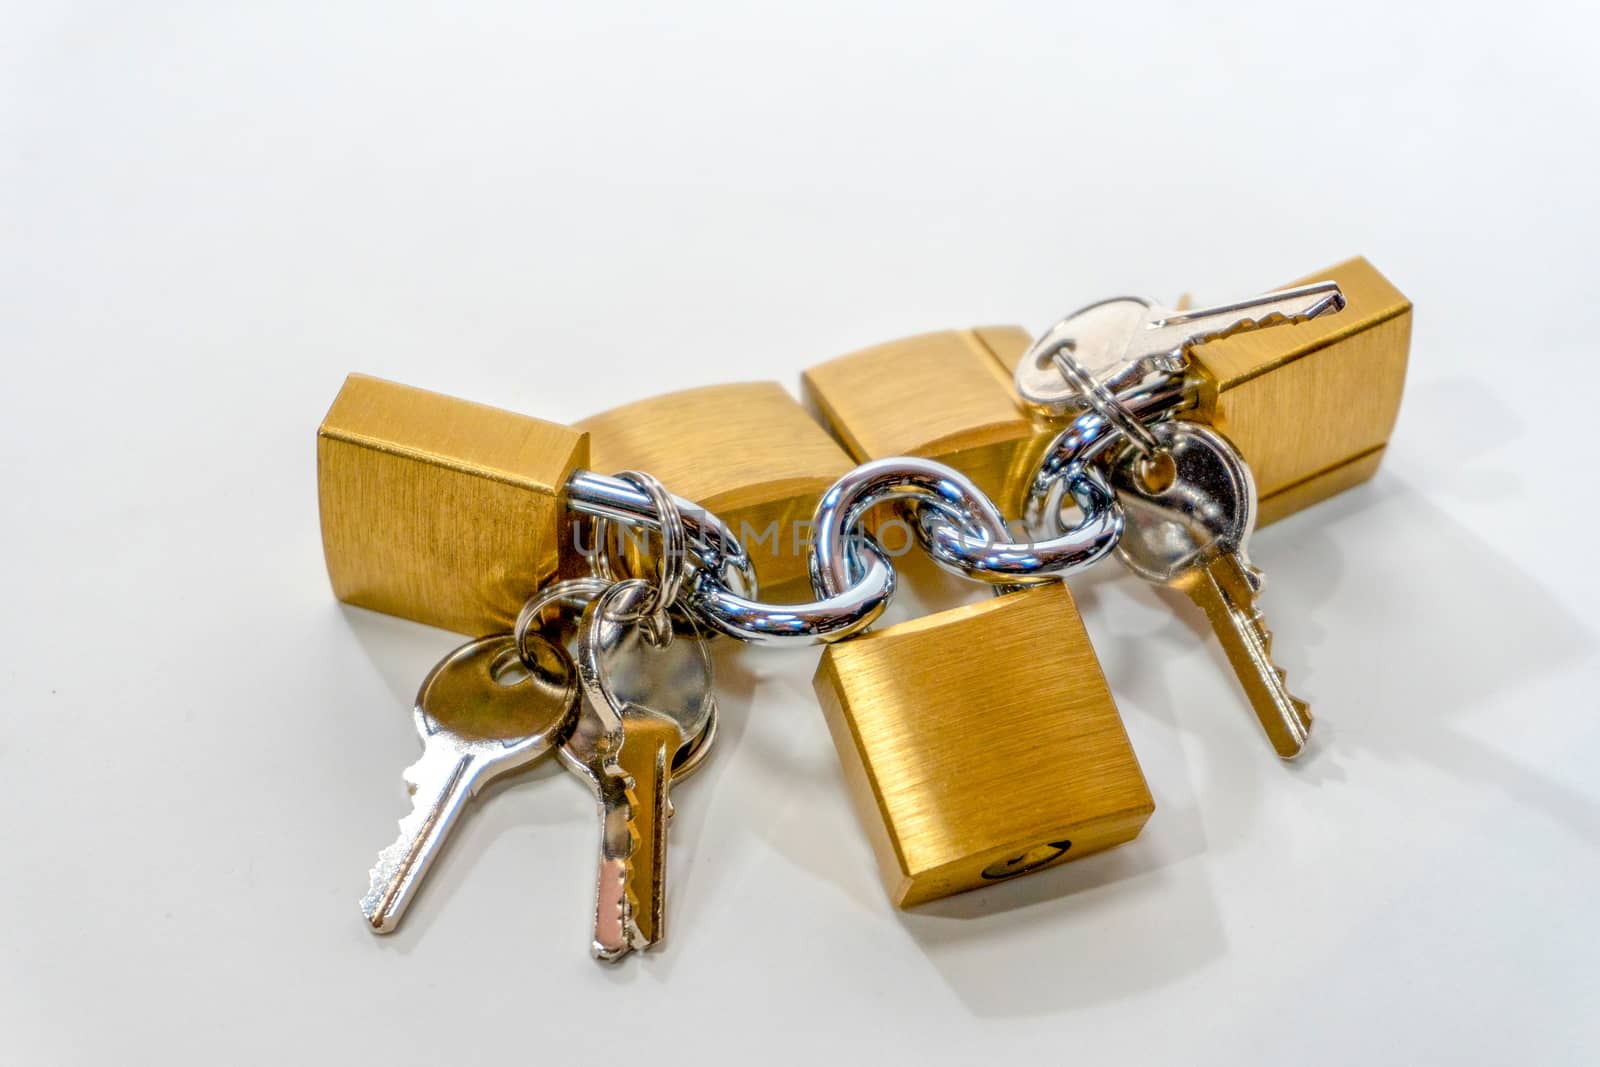 Small bronze locks with steel keys by ben44